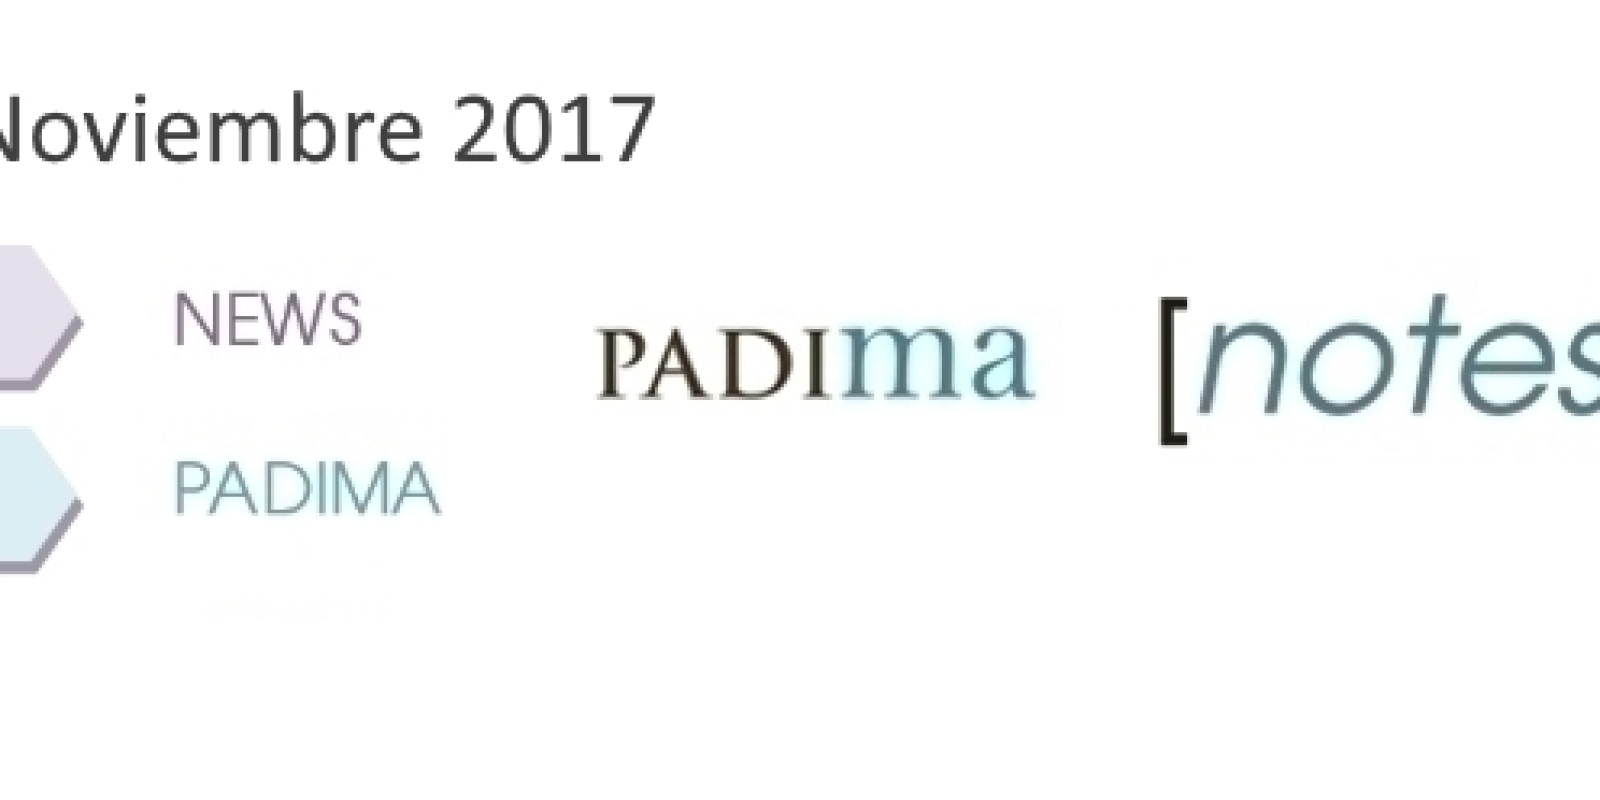 PADIMA-NOTES-Noviembre-2017